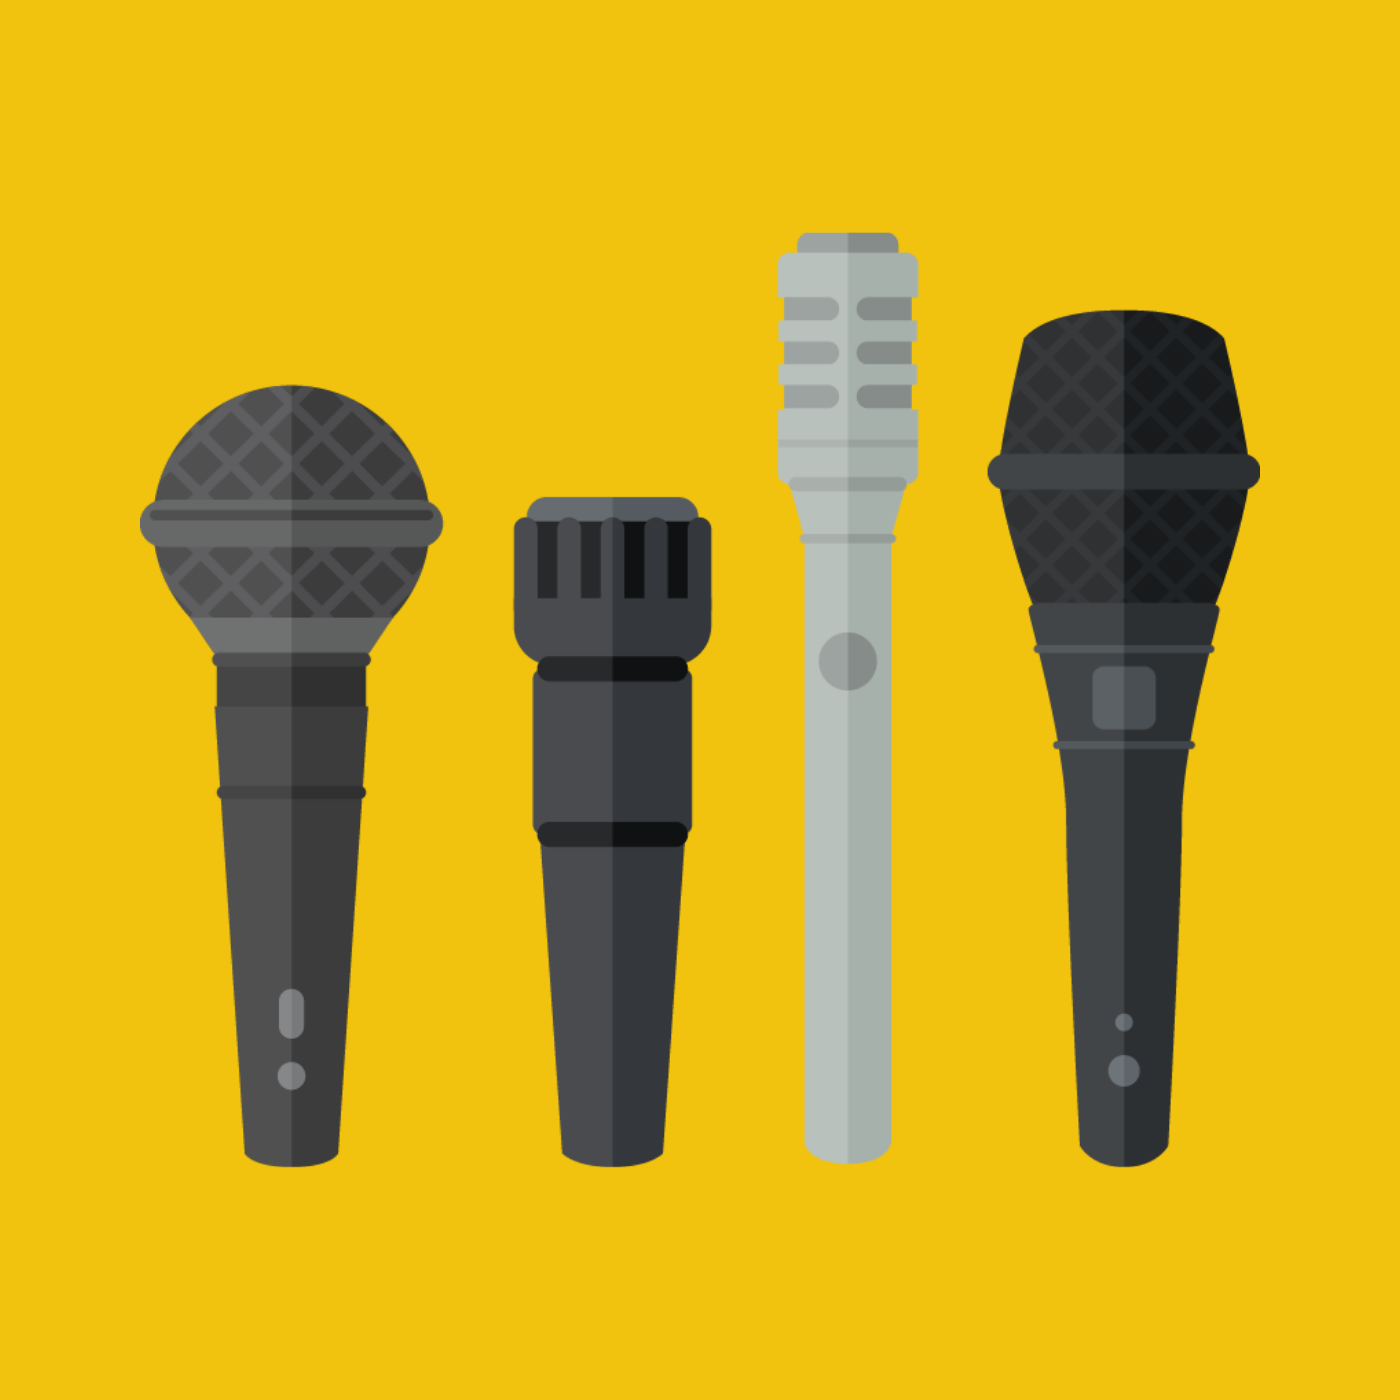 Imagem que representa o primeiro elo da sonorização: os microfones. Na figura, a representação de quatro microfones de mão sobre fundo amarelo.